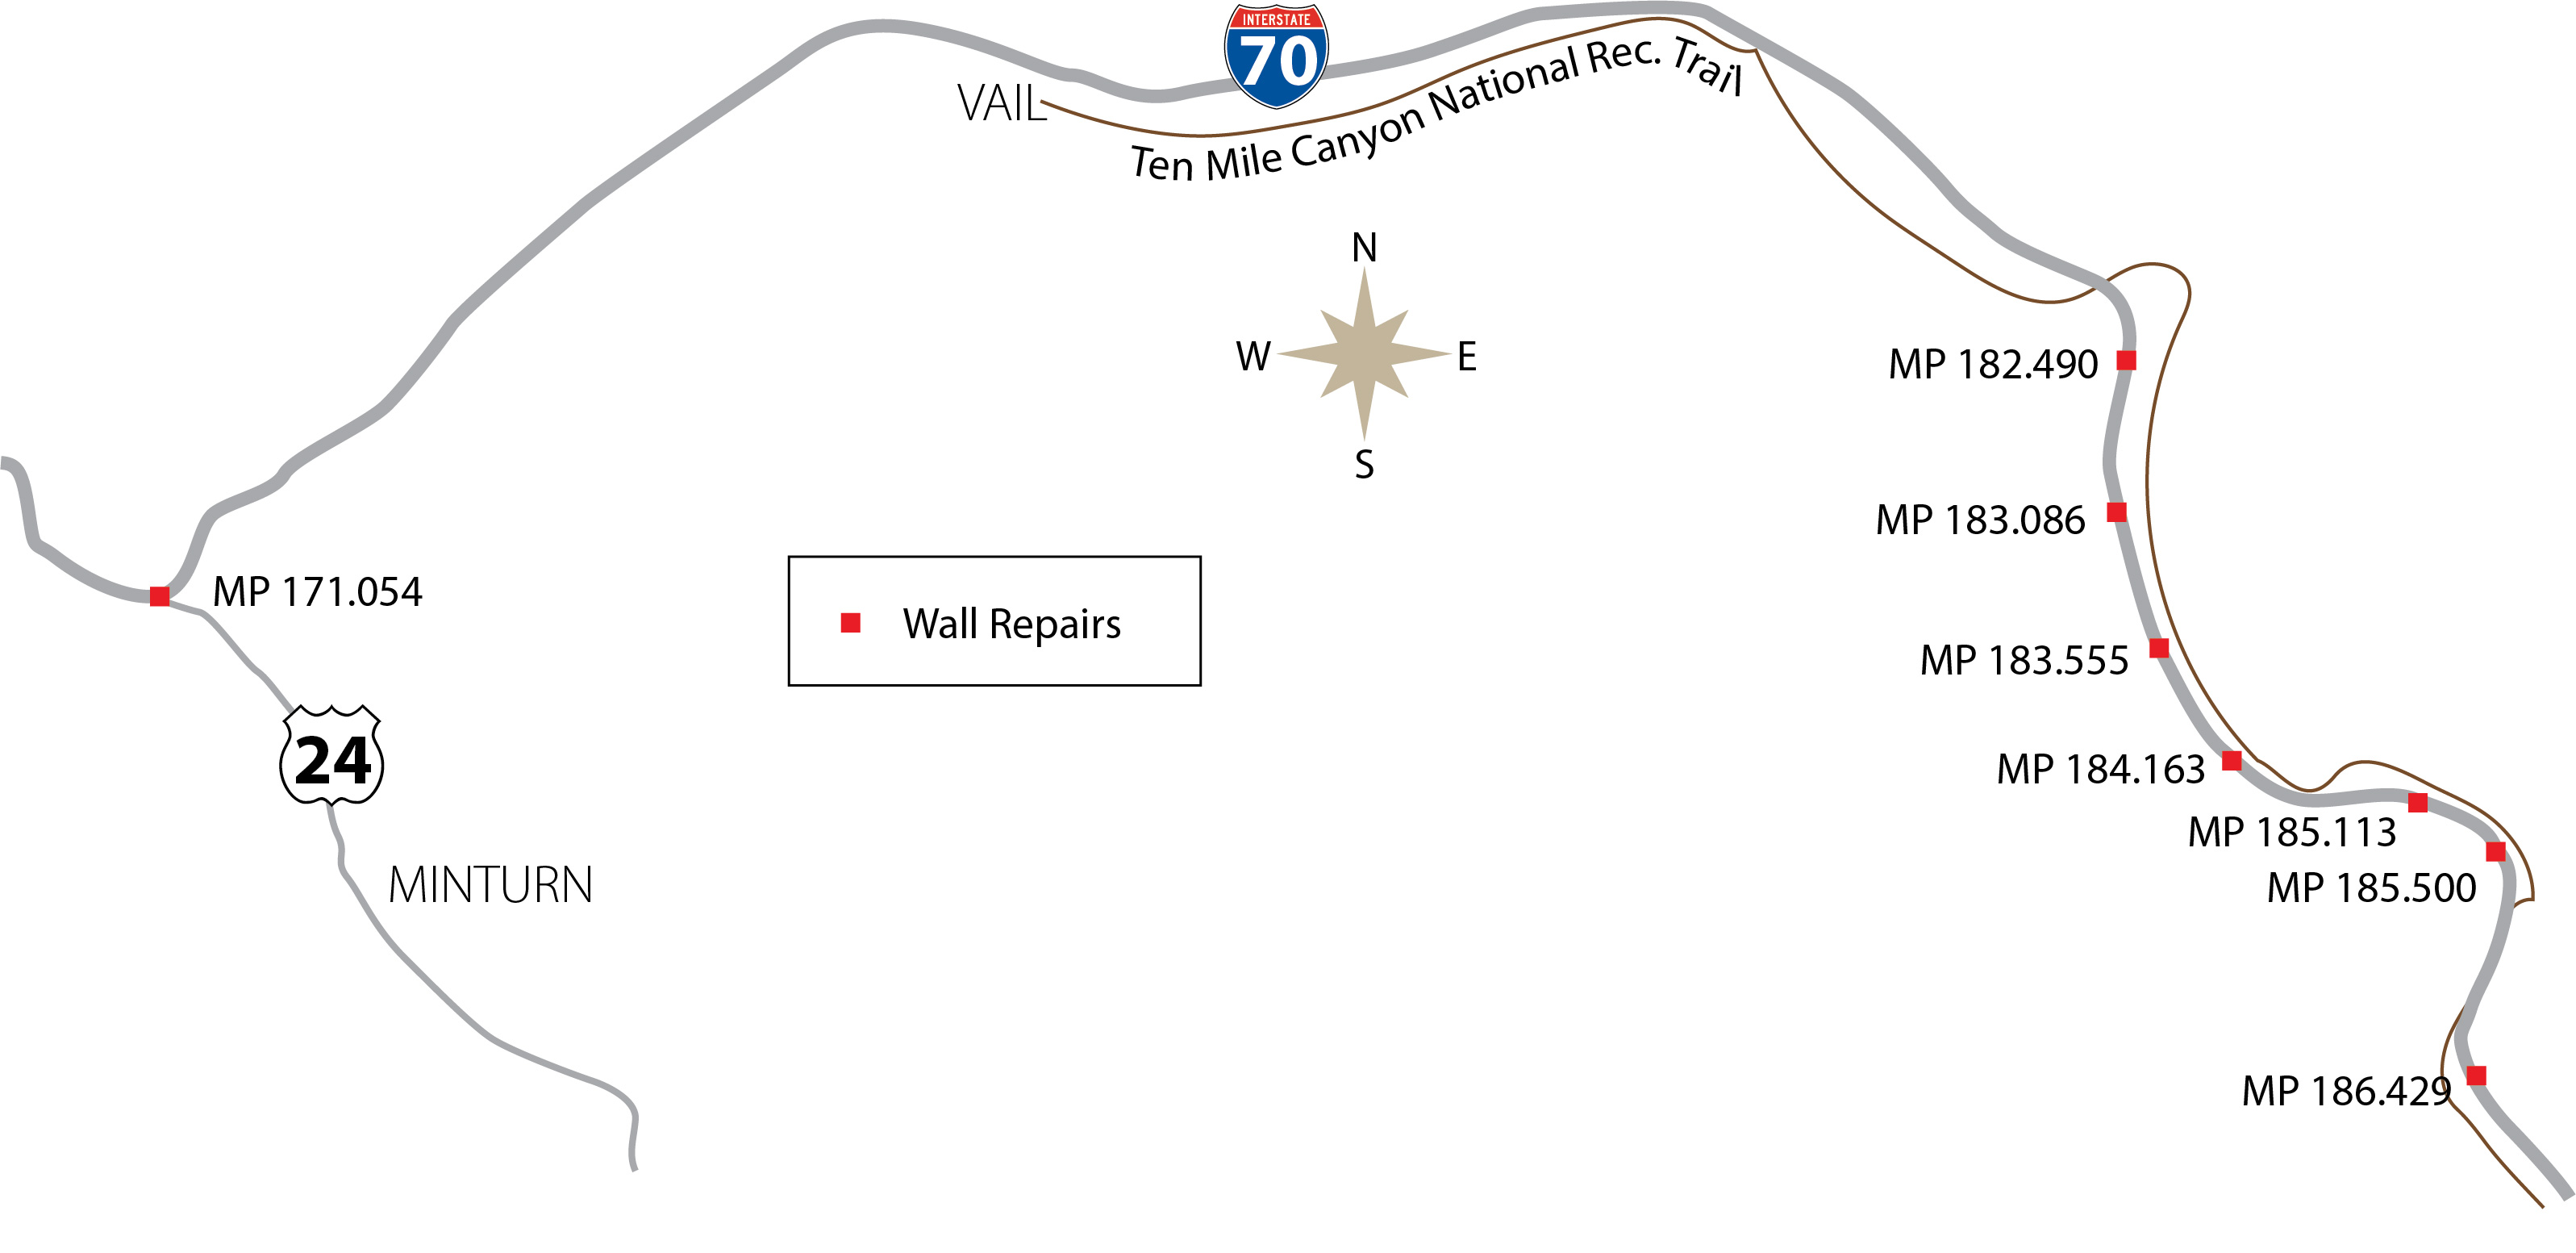 I-70 Wall Repairs work zone.jpg detail image